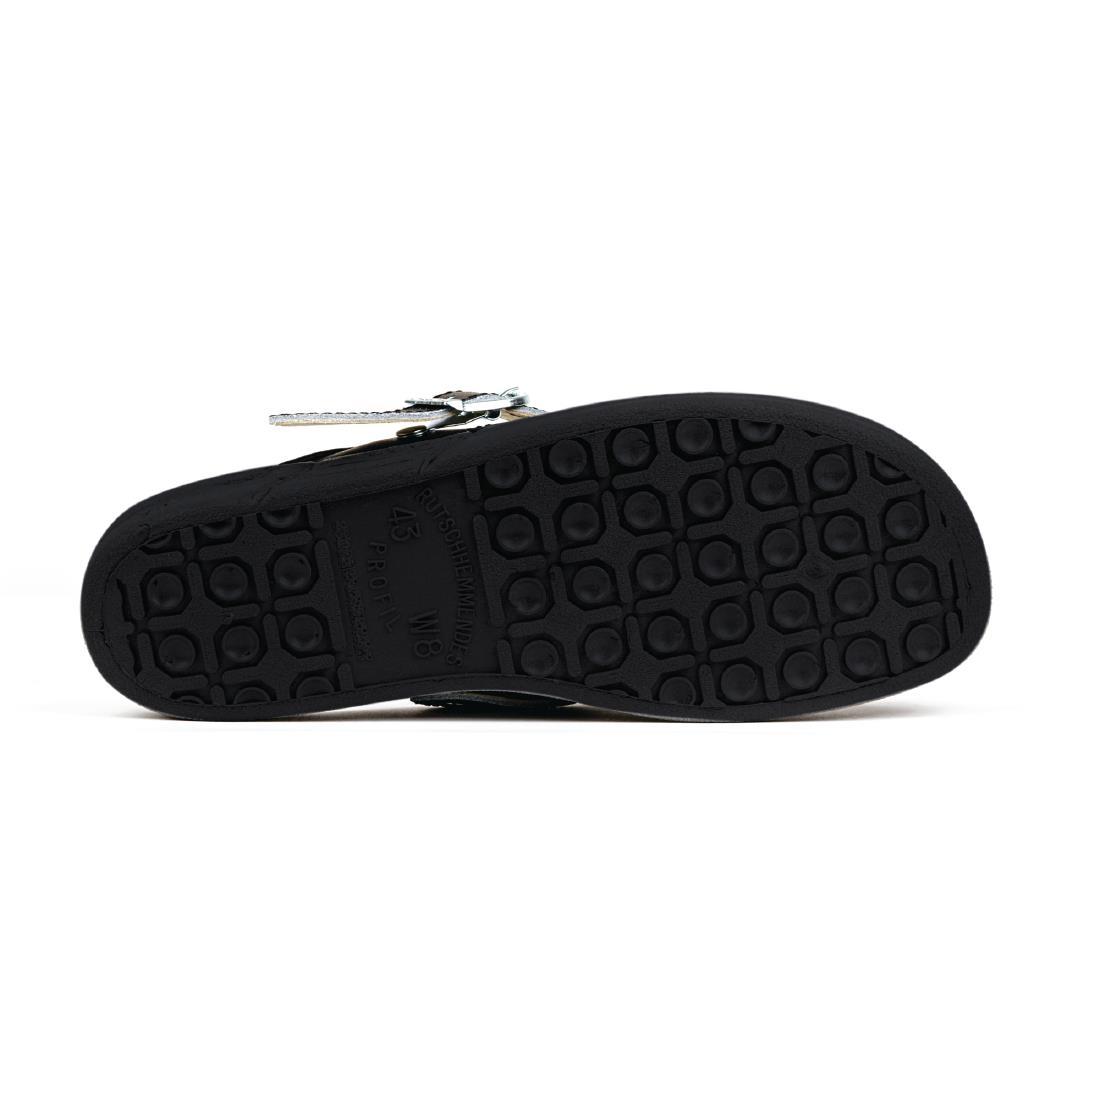 Abeba Microfibre Clogs Black Size 39 - A898-39  - 4